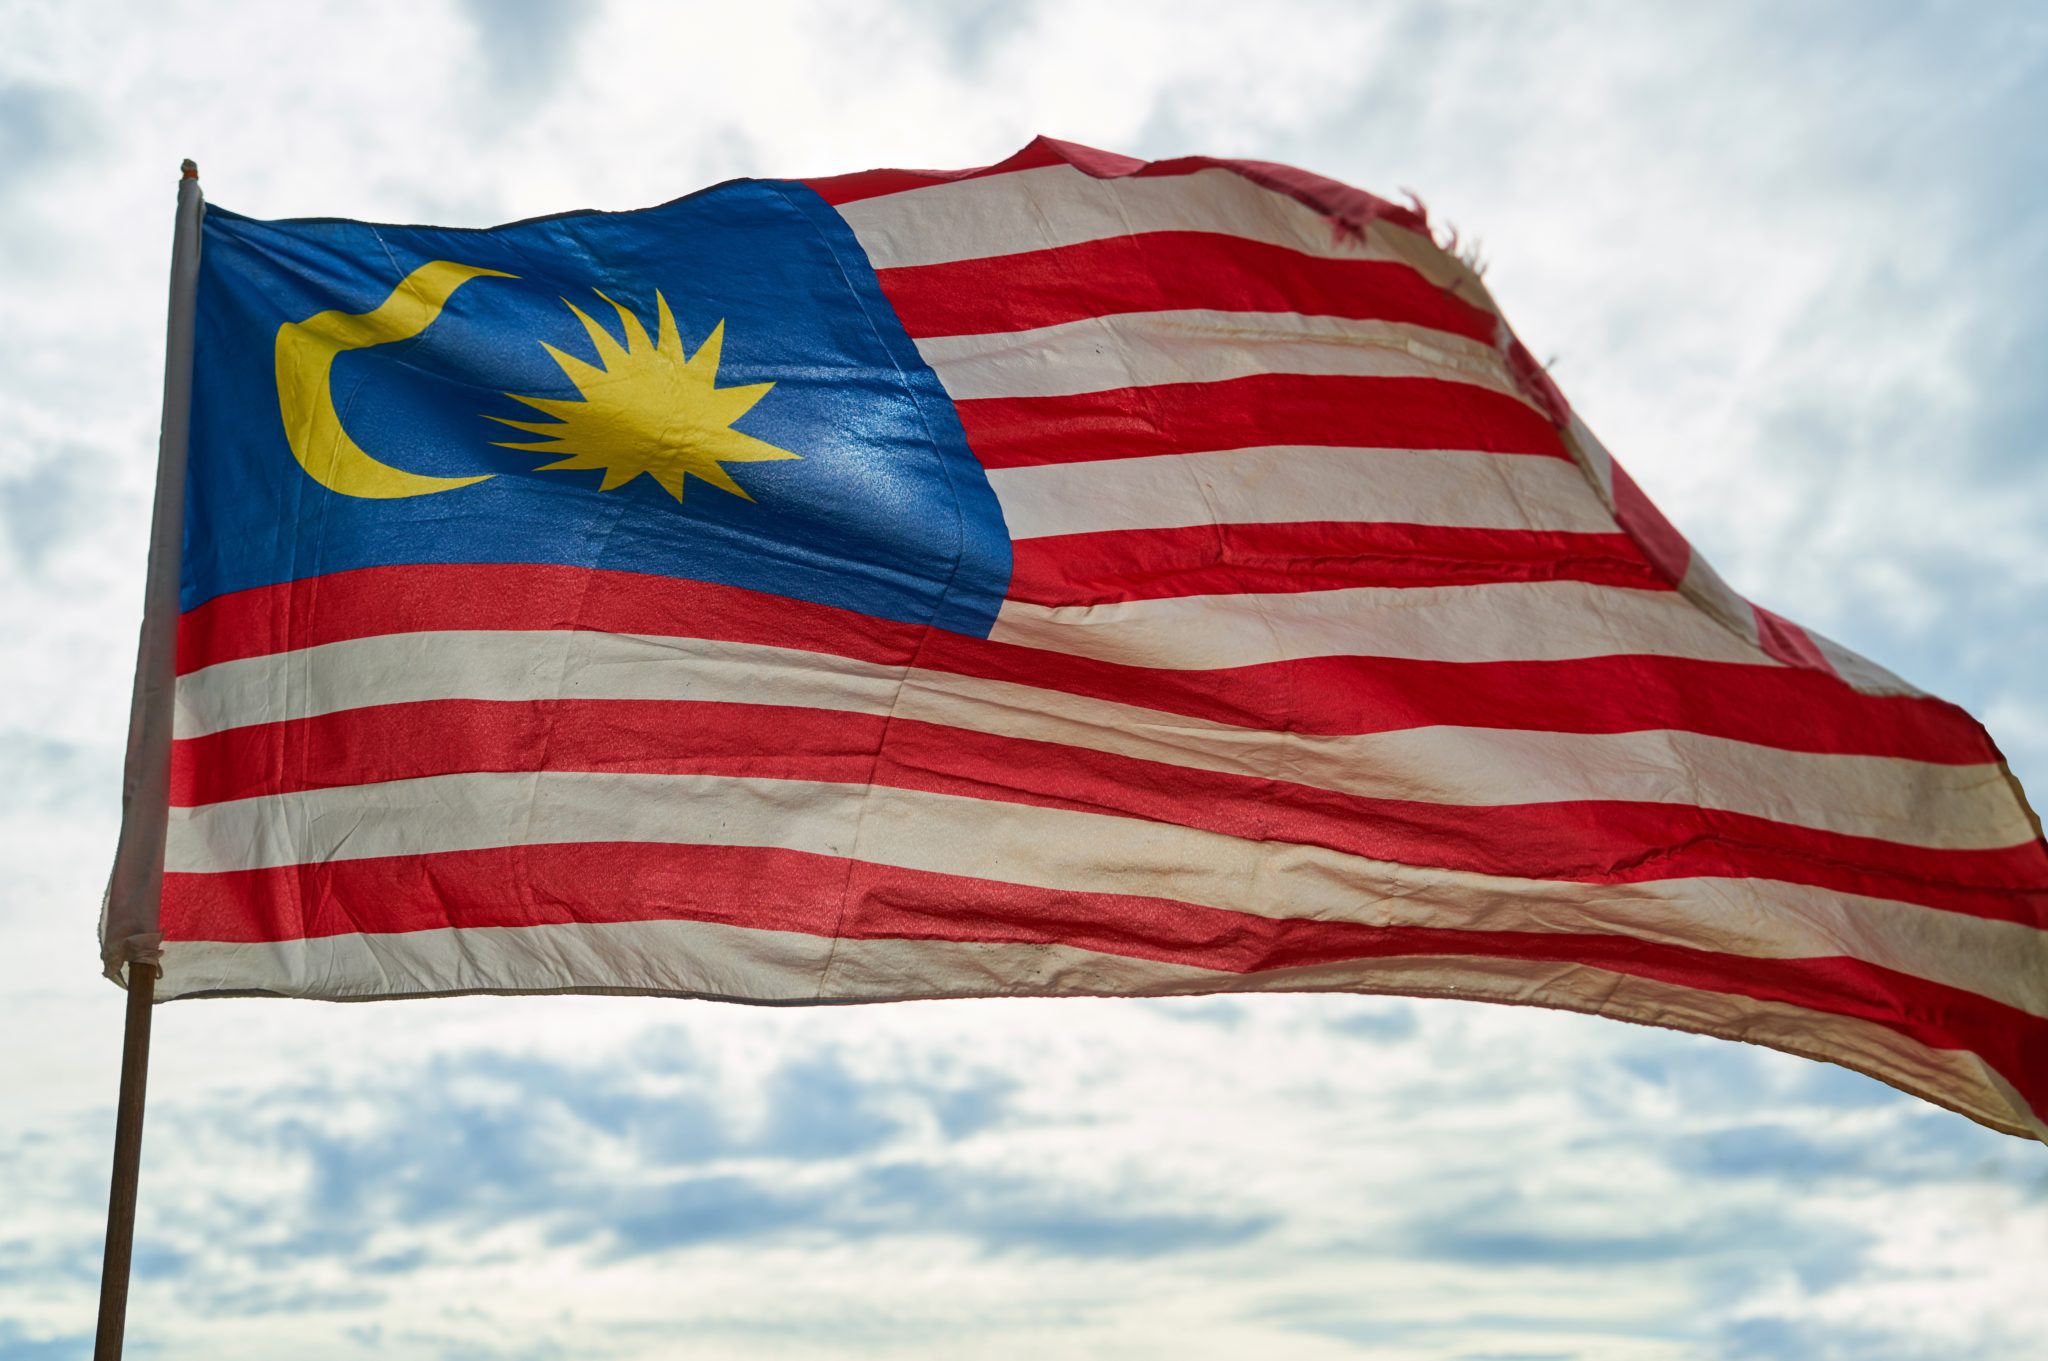 Anwar Ibrahim: il nuovo volto riformista della Malesia